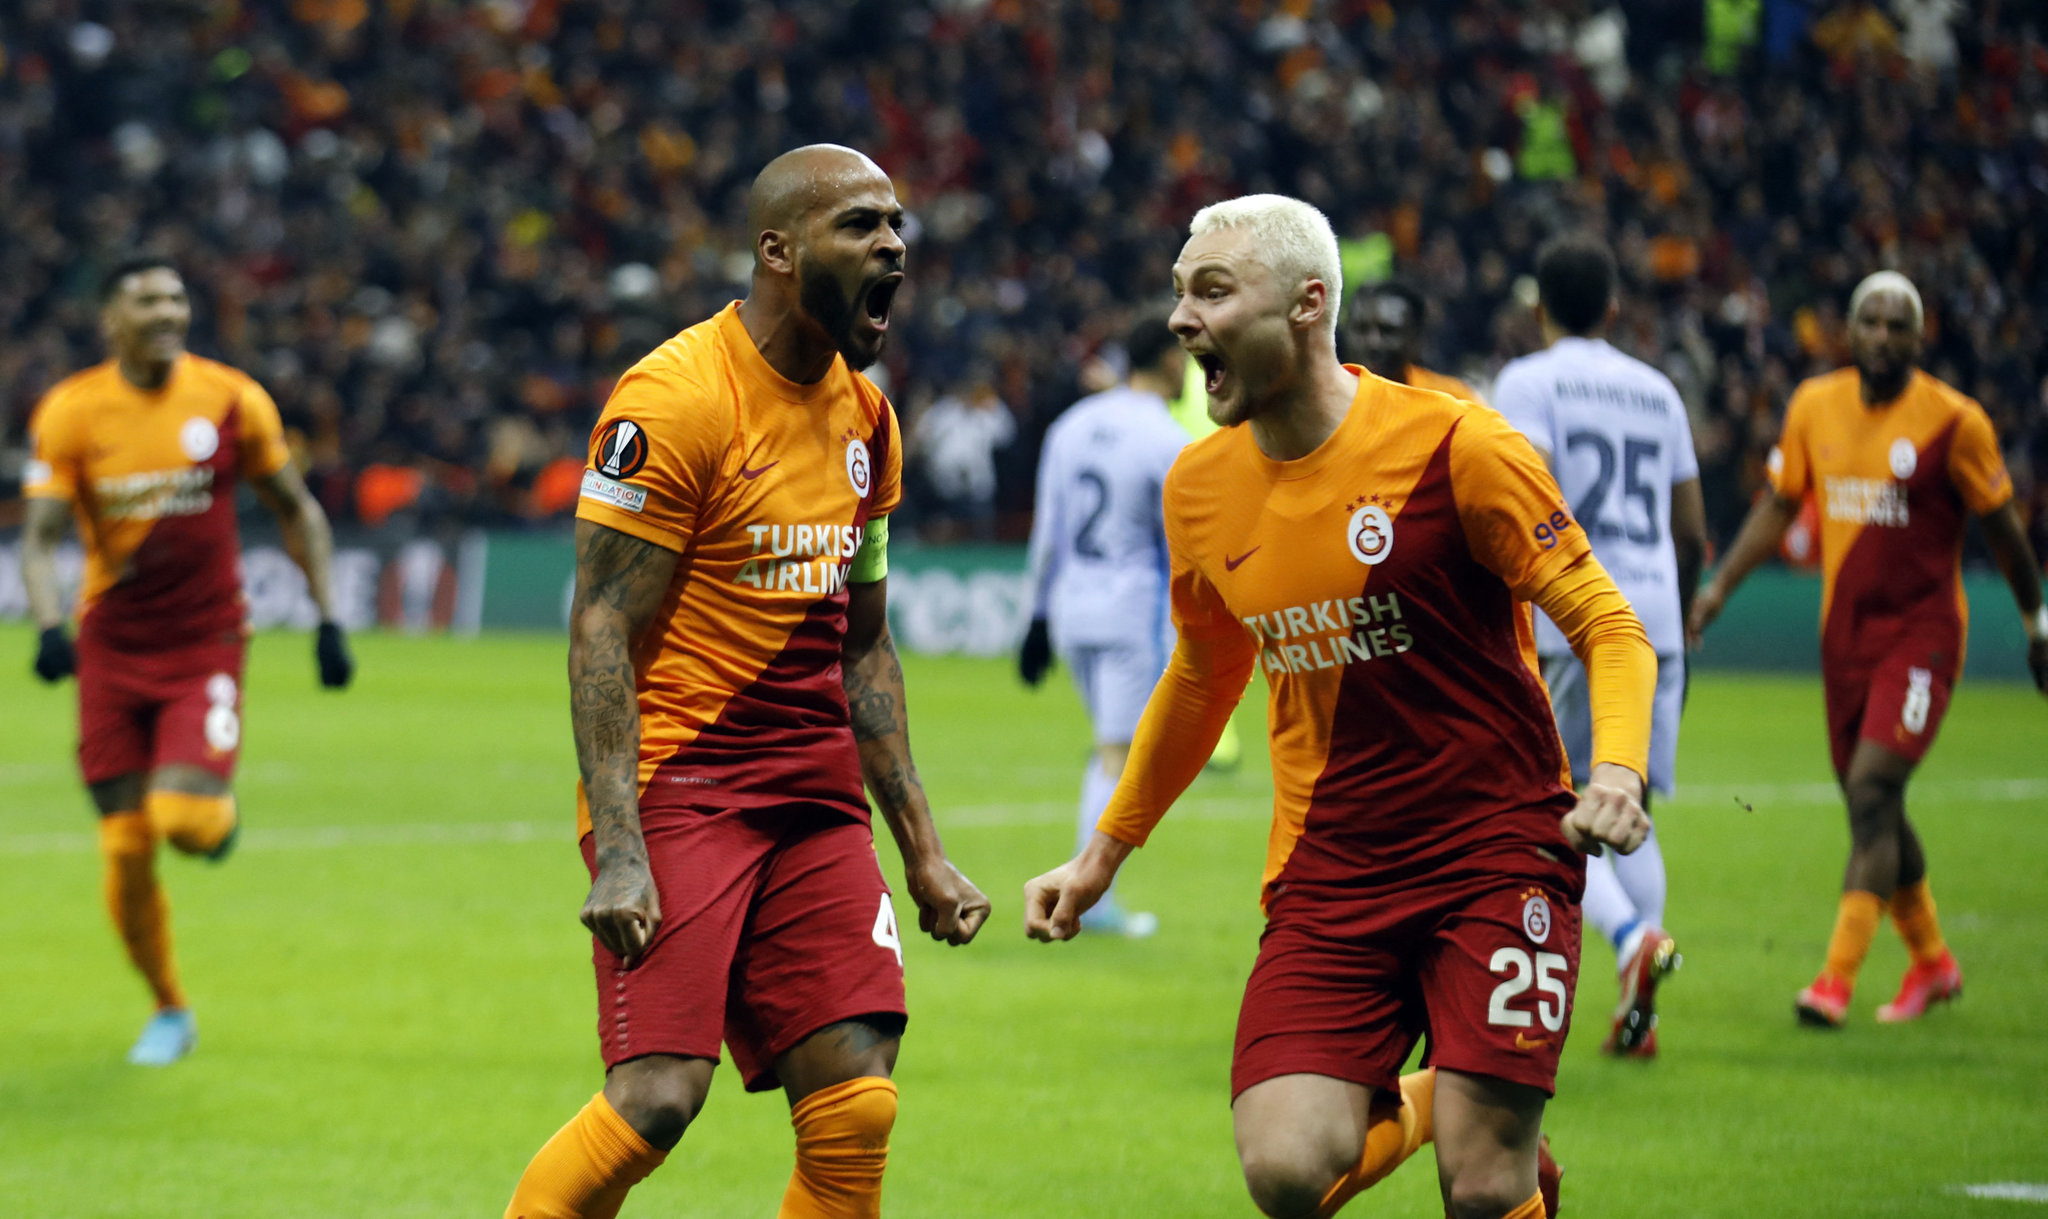 GALATASARAY TRANSFER HABERLERİ - Galatasaray’da savunma değişikliği! Victor Nelsson gidiyor Daniele Rugani geliyor